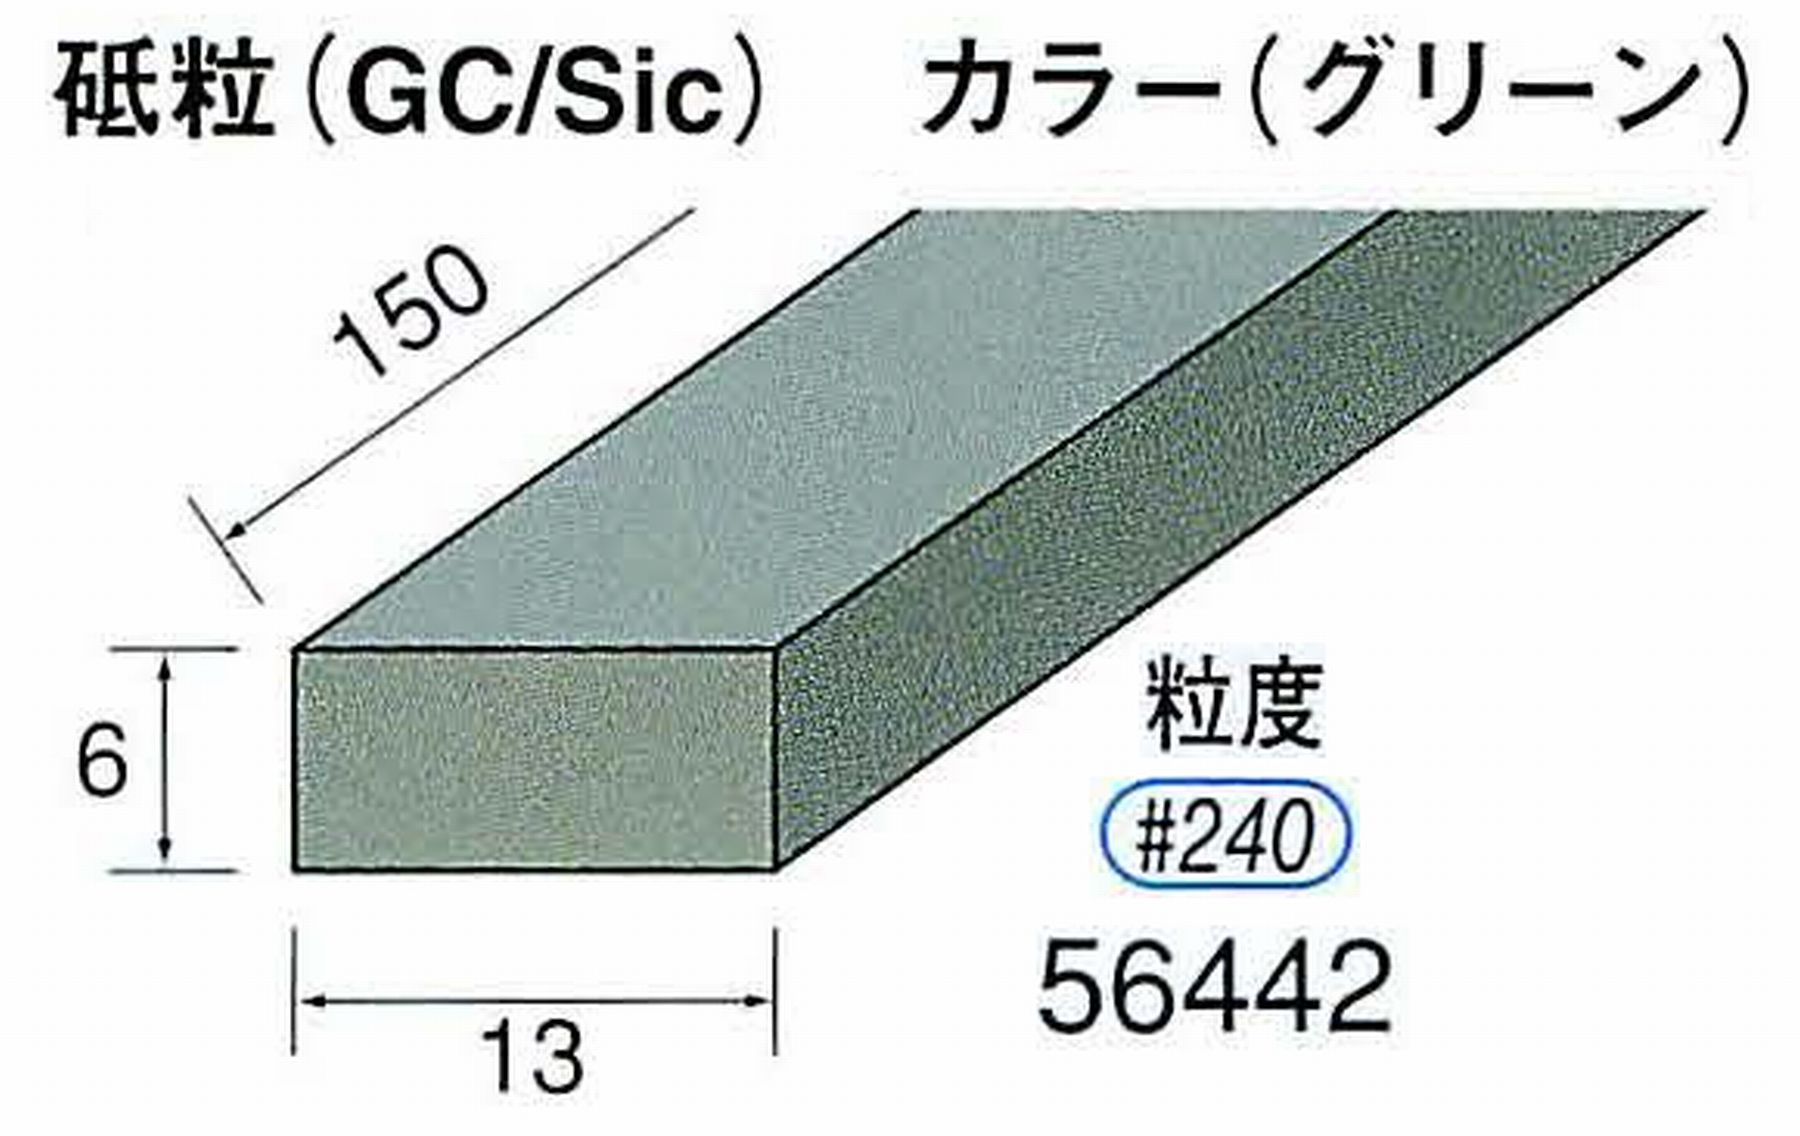 ナカニシ/NAKANISHI スティック砥石 グリーン・フィニッシュシリーズ 砥粒(GC/Sic) 56442